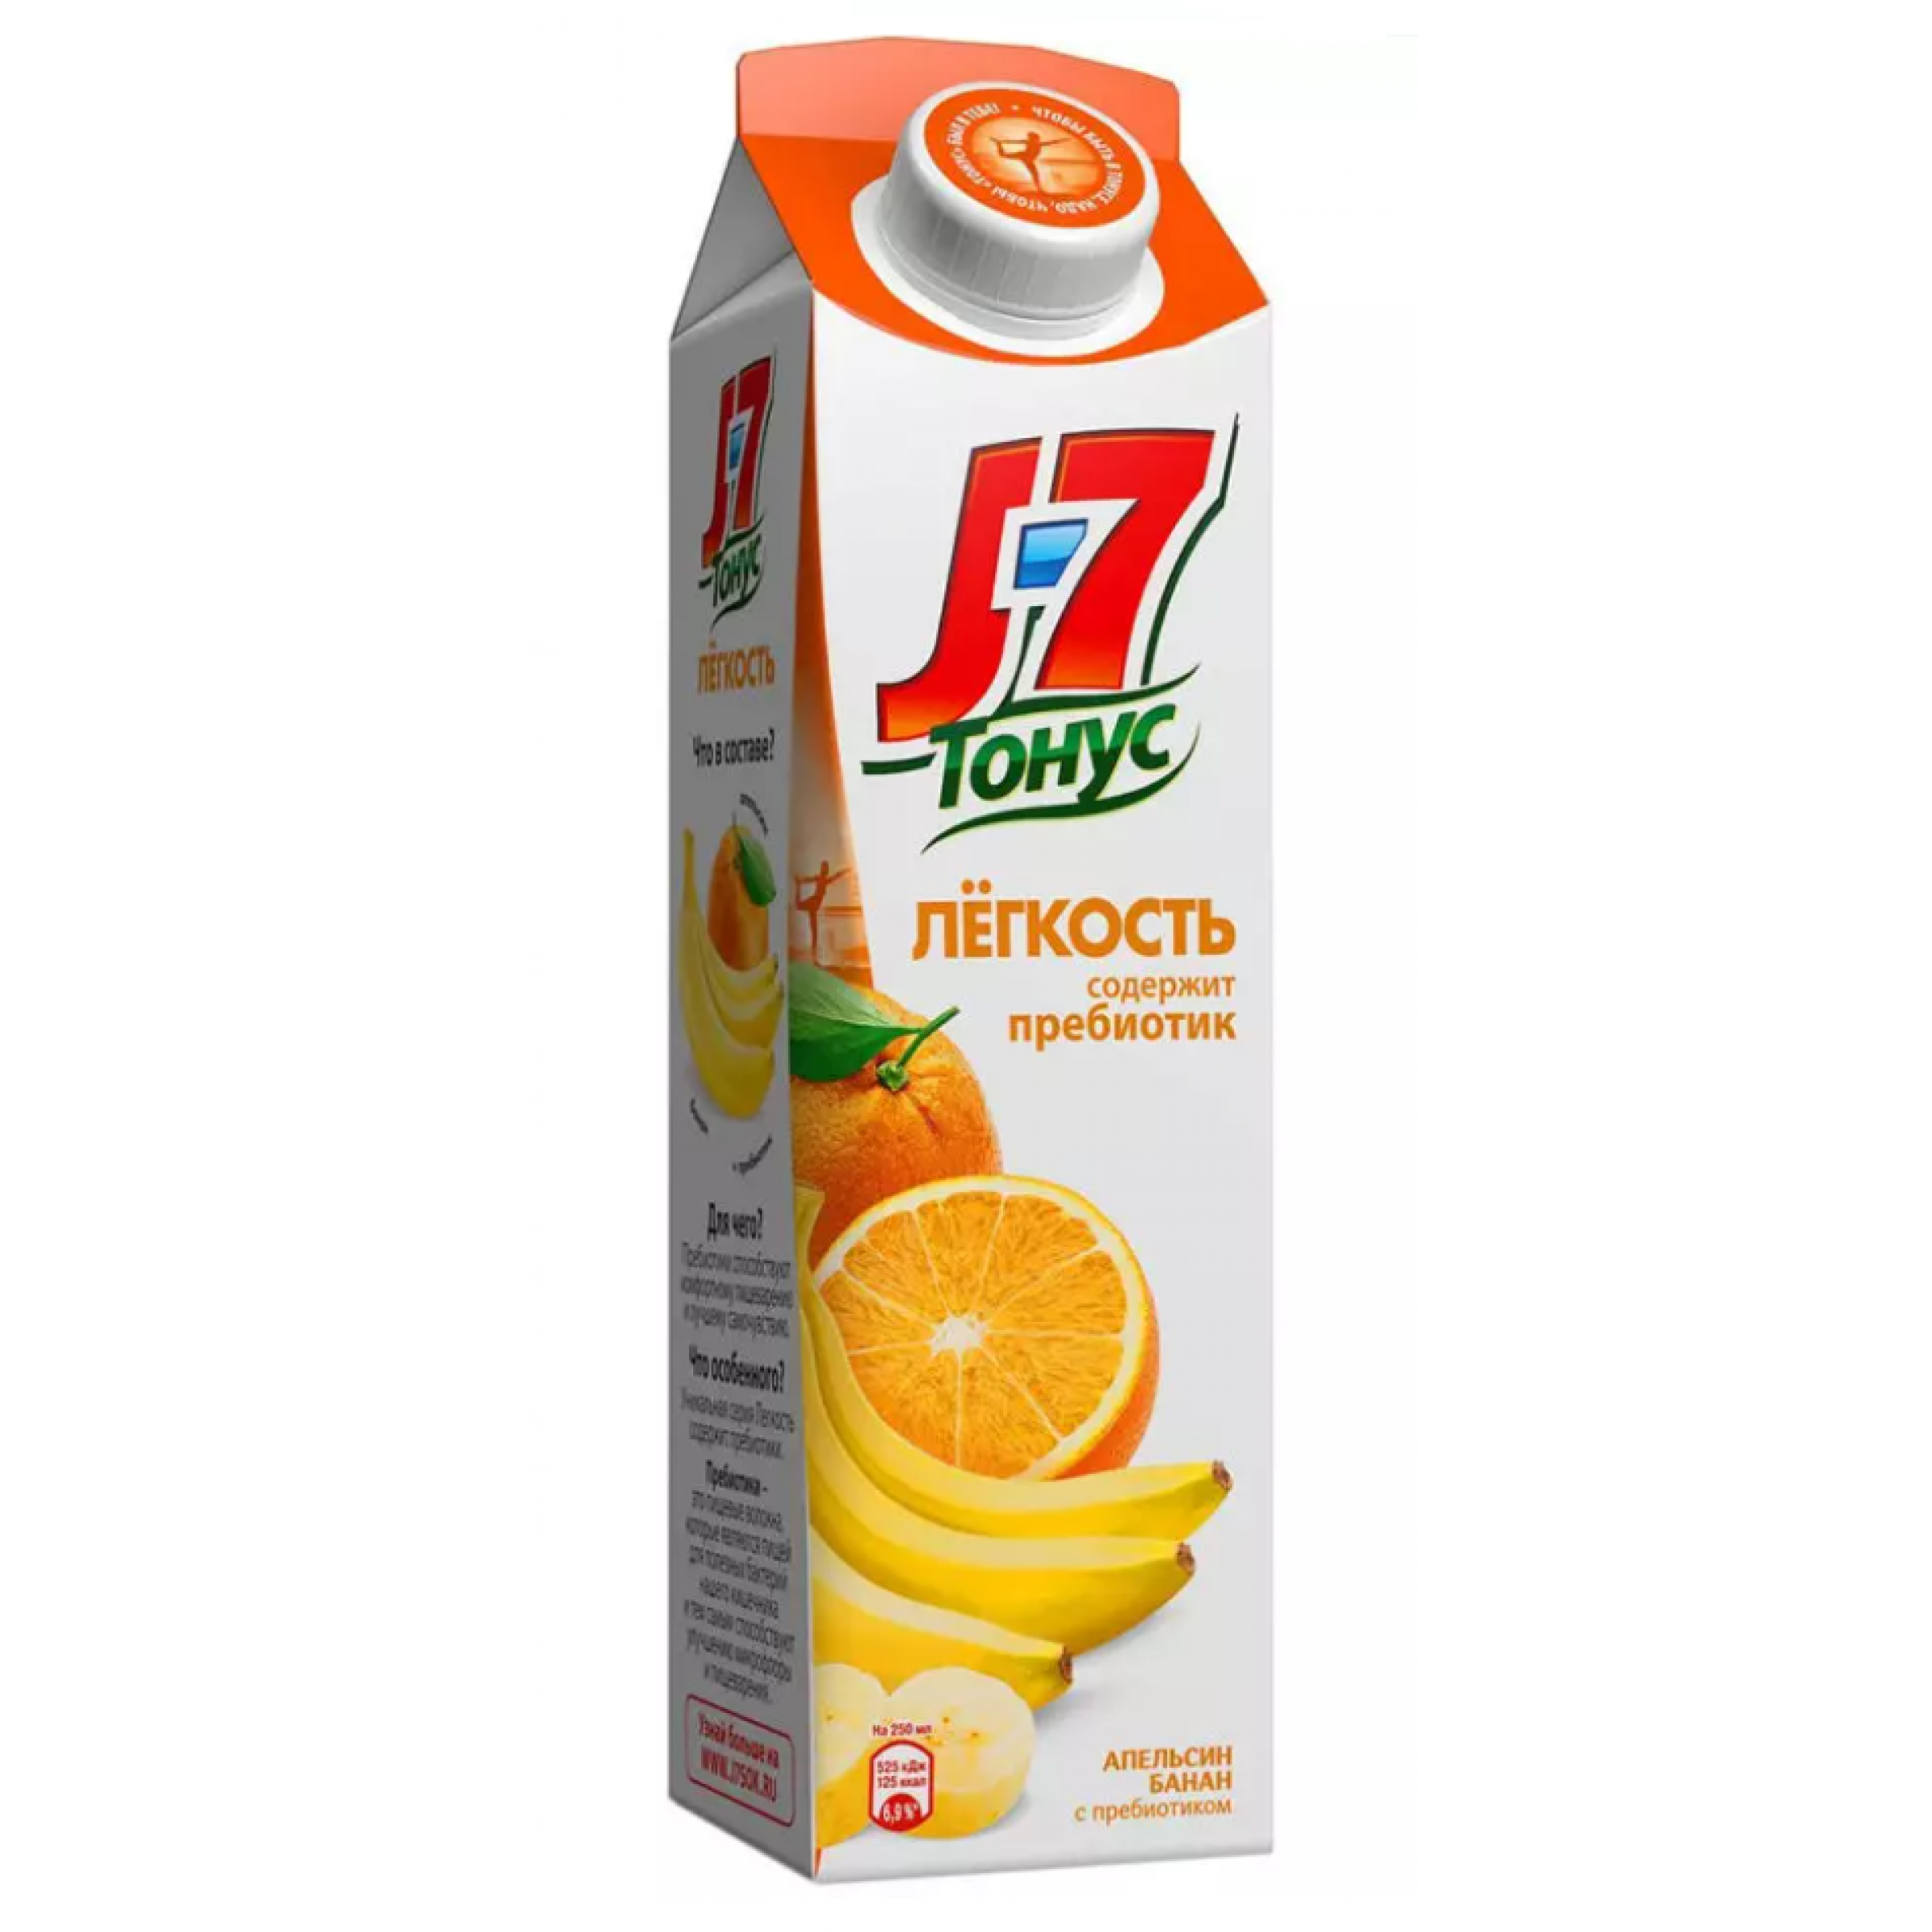 Нектар J7 Тонус Легкость апельсин и банан с пребиотиком, с мякотью, 0,9 л